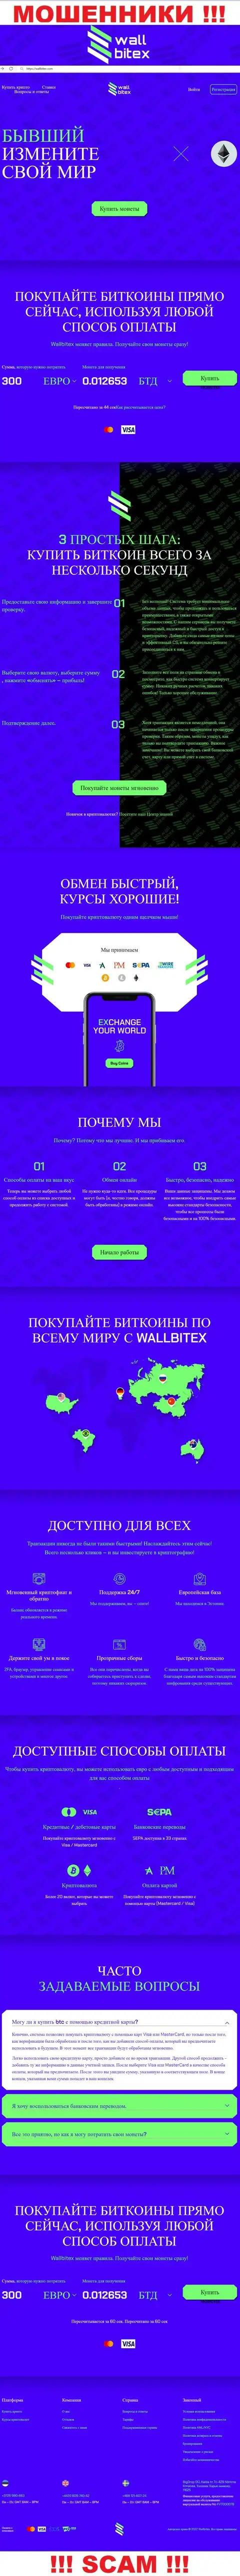 WallBitex Com - это официальный сайт противоправно действующей конторы Валл Битекс